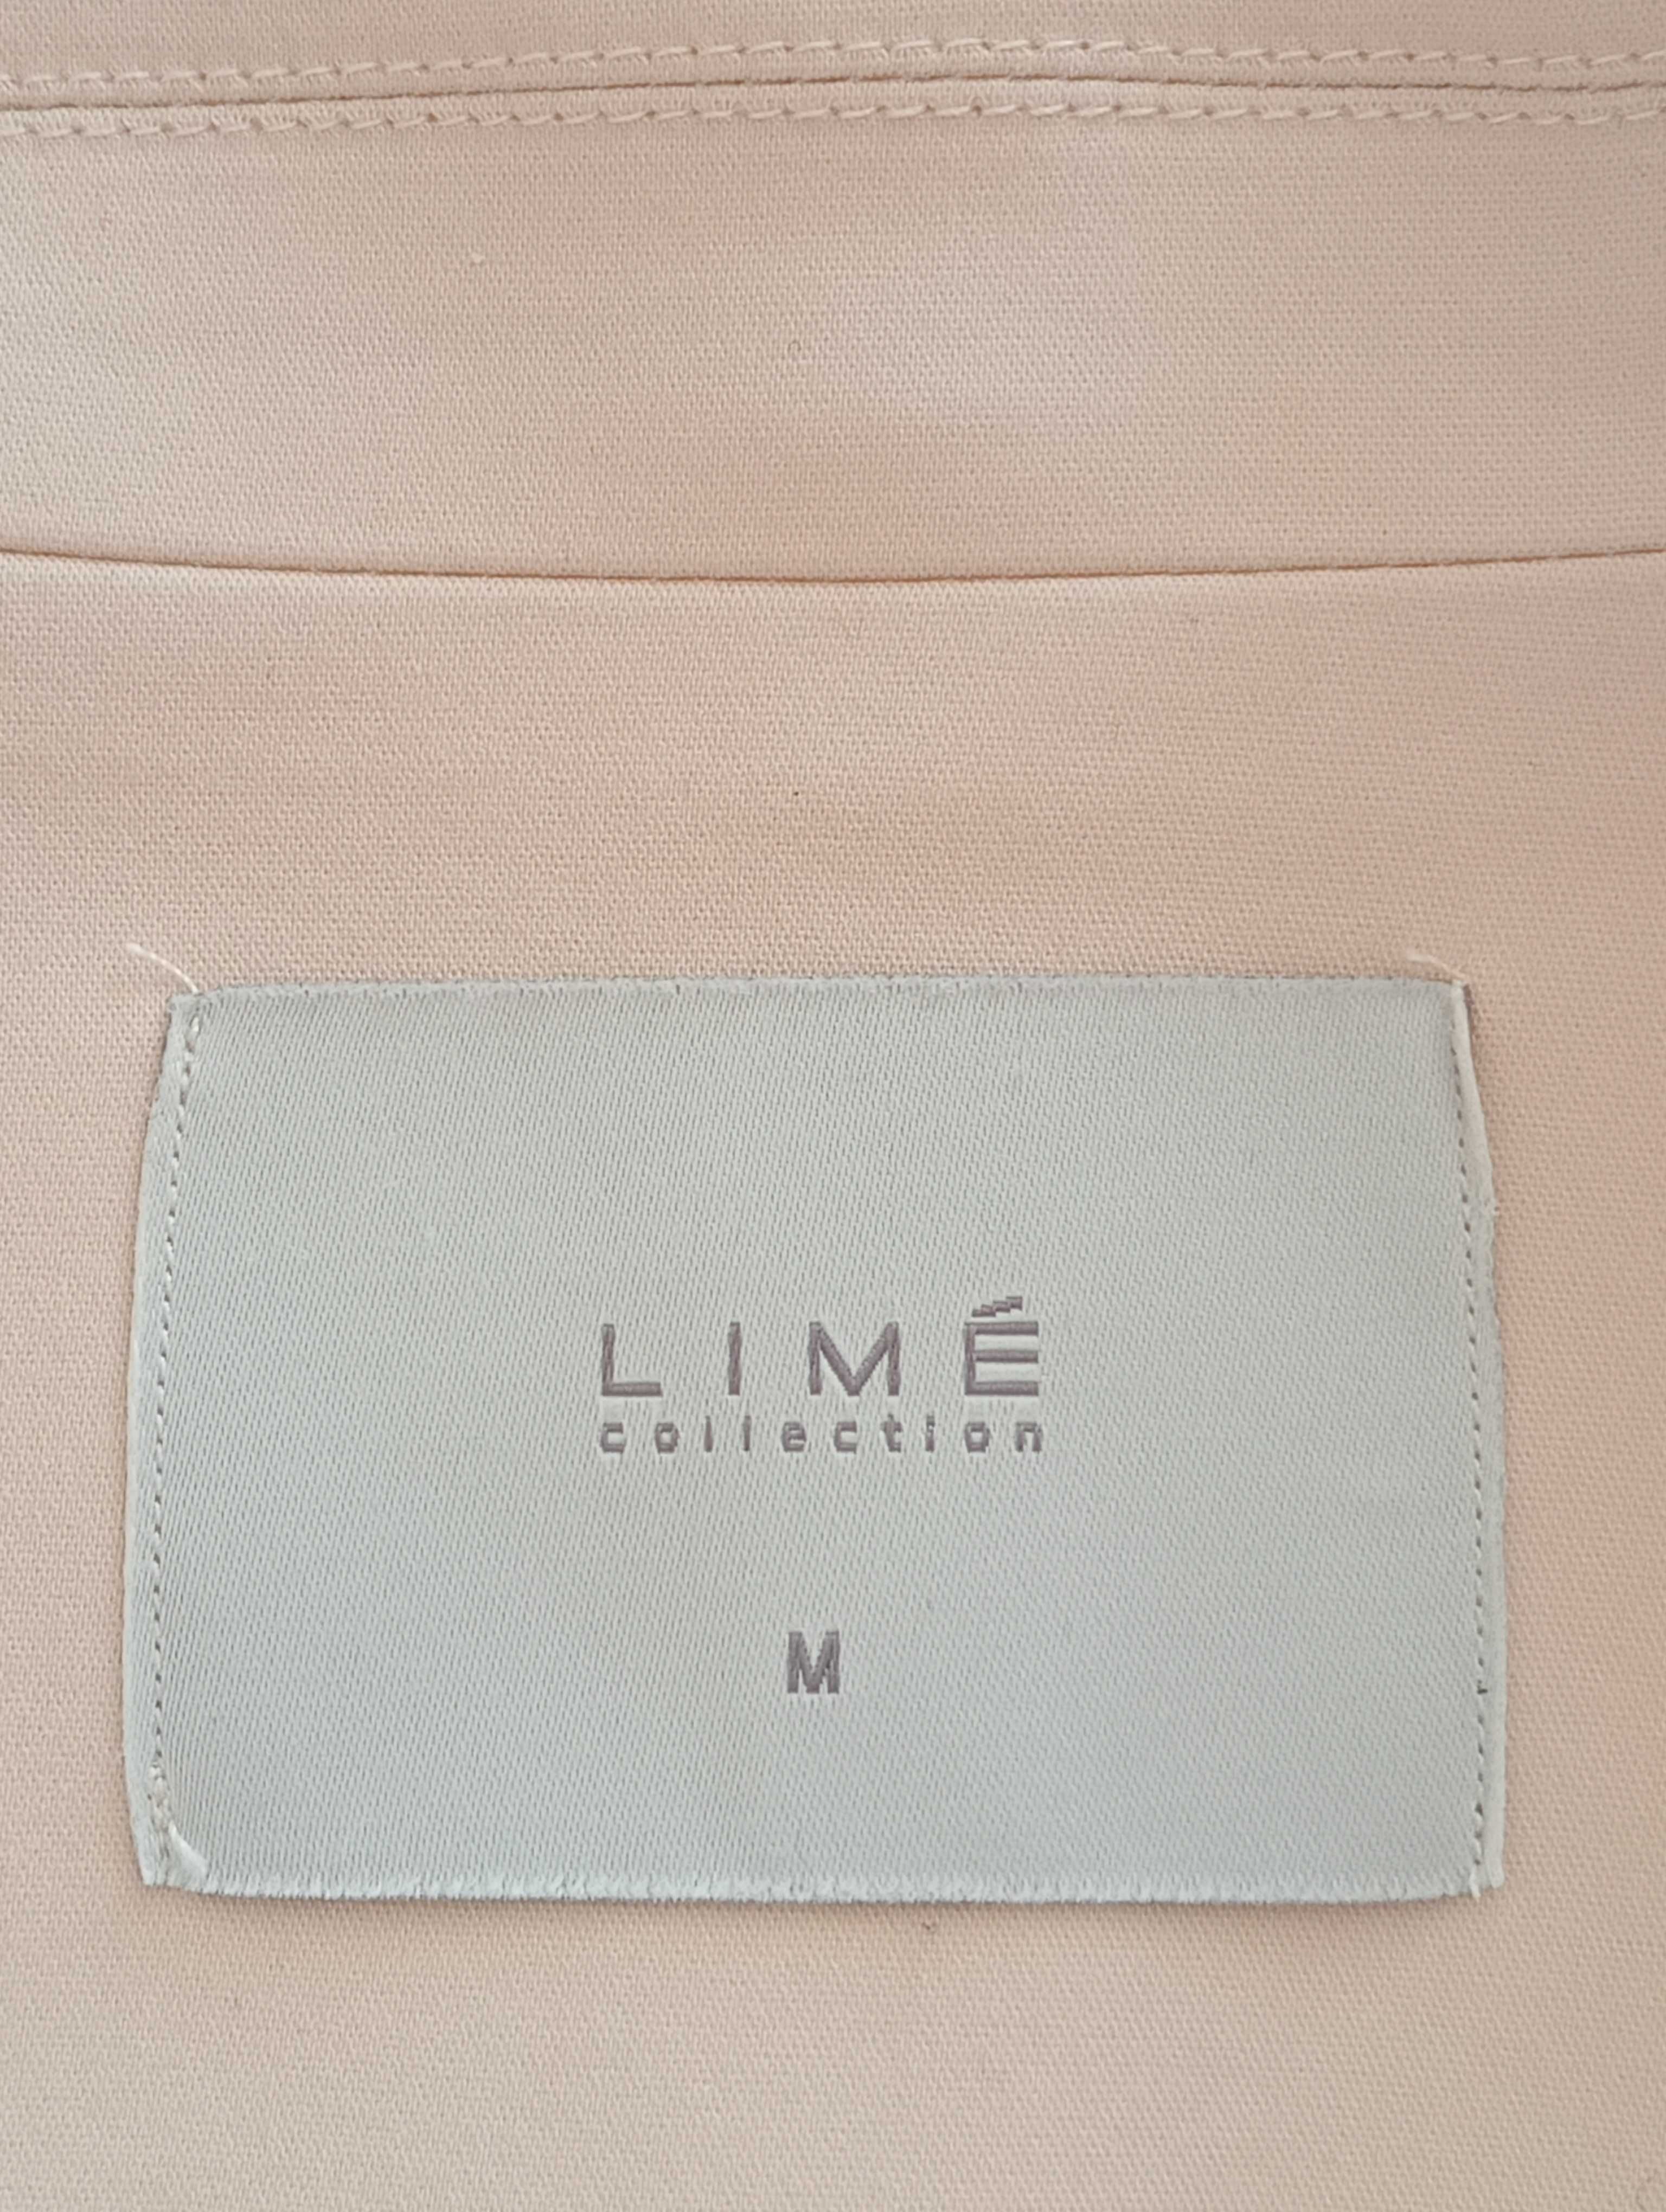 Жіночий піджак LIME колір пудра розмір М.